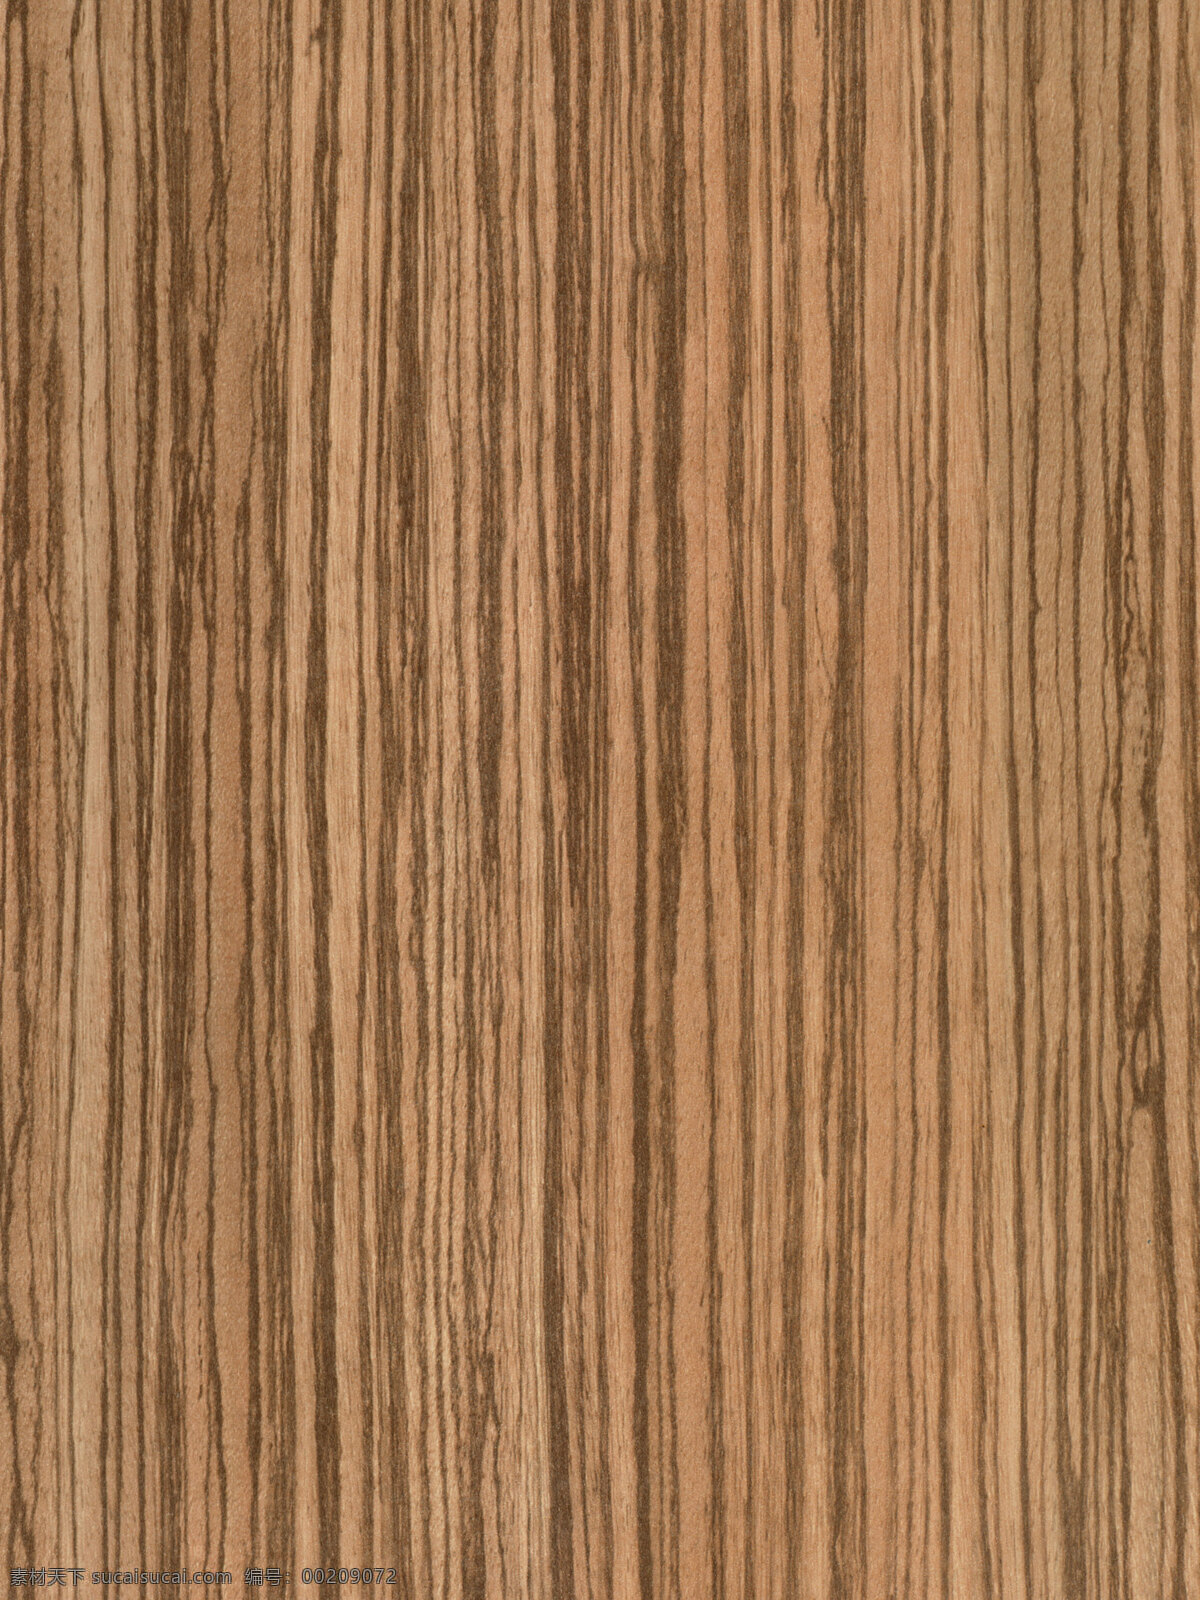 574 木材 木纹 效果图 3d 3d材质 3d模型下载 木纹素材 木纹效果图 3d材质图 3d模型素材 材质贴图